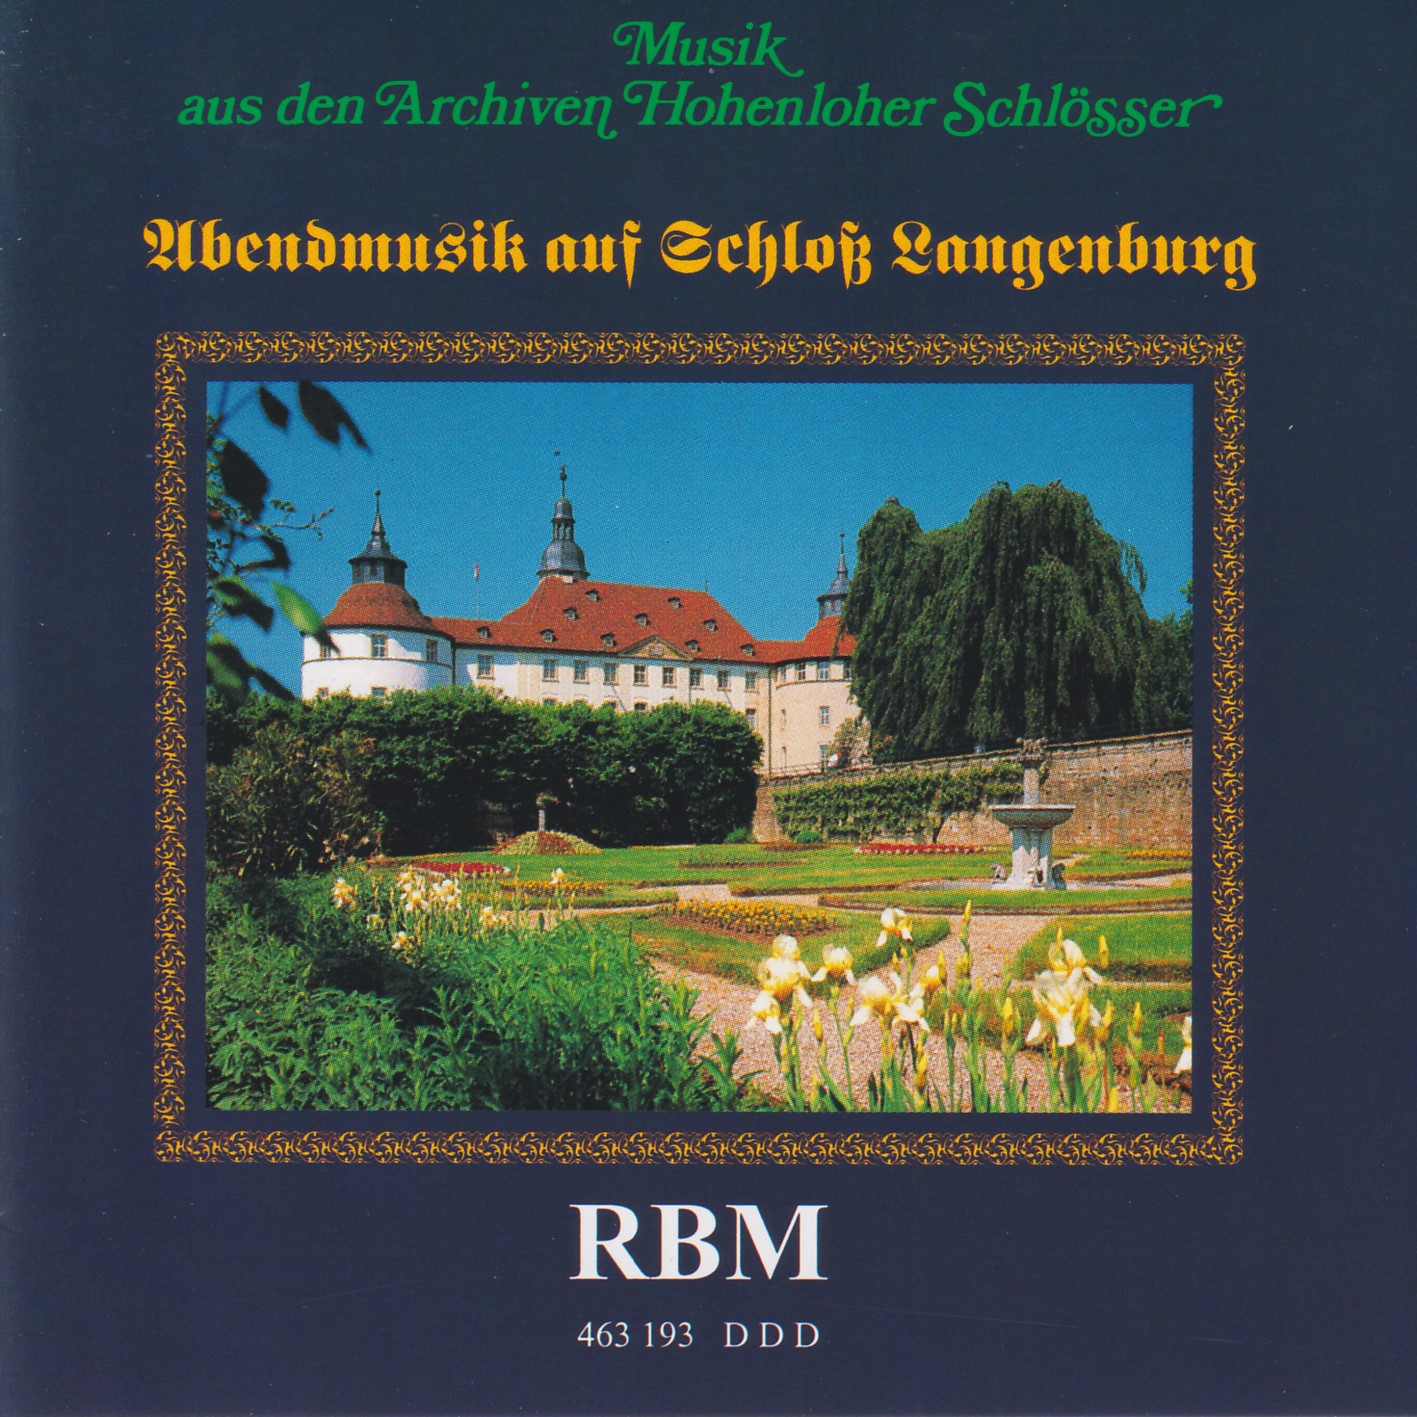 Abendmusik auf Schloß Langenburg